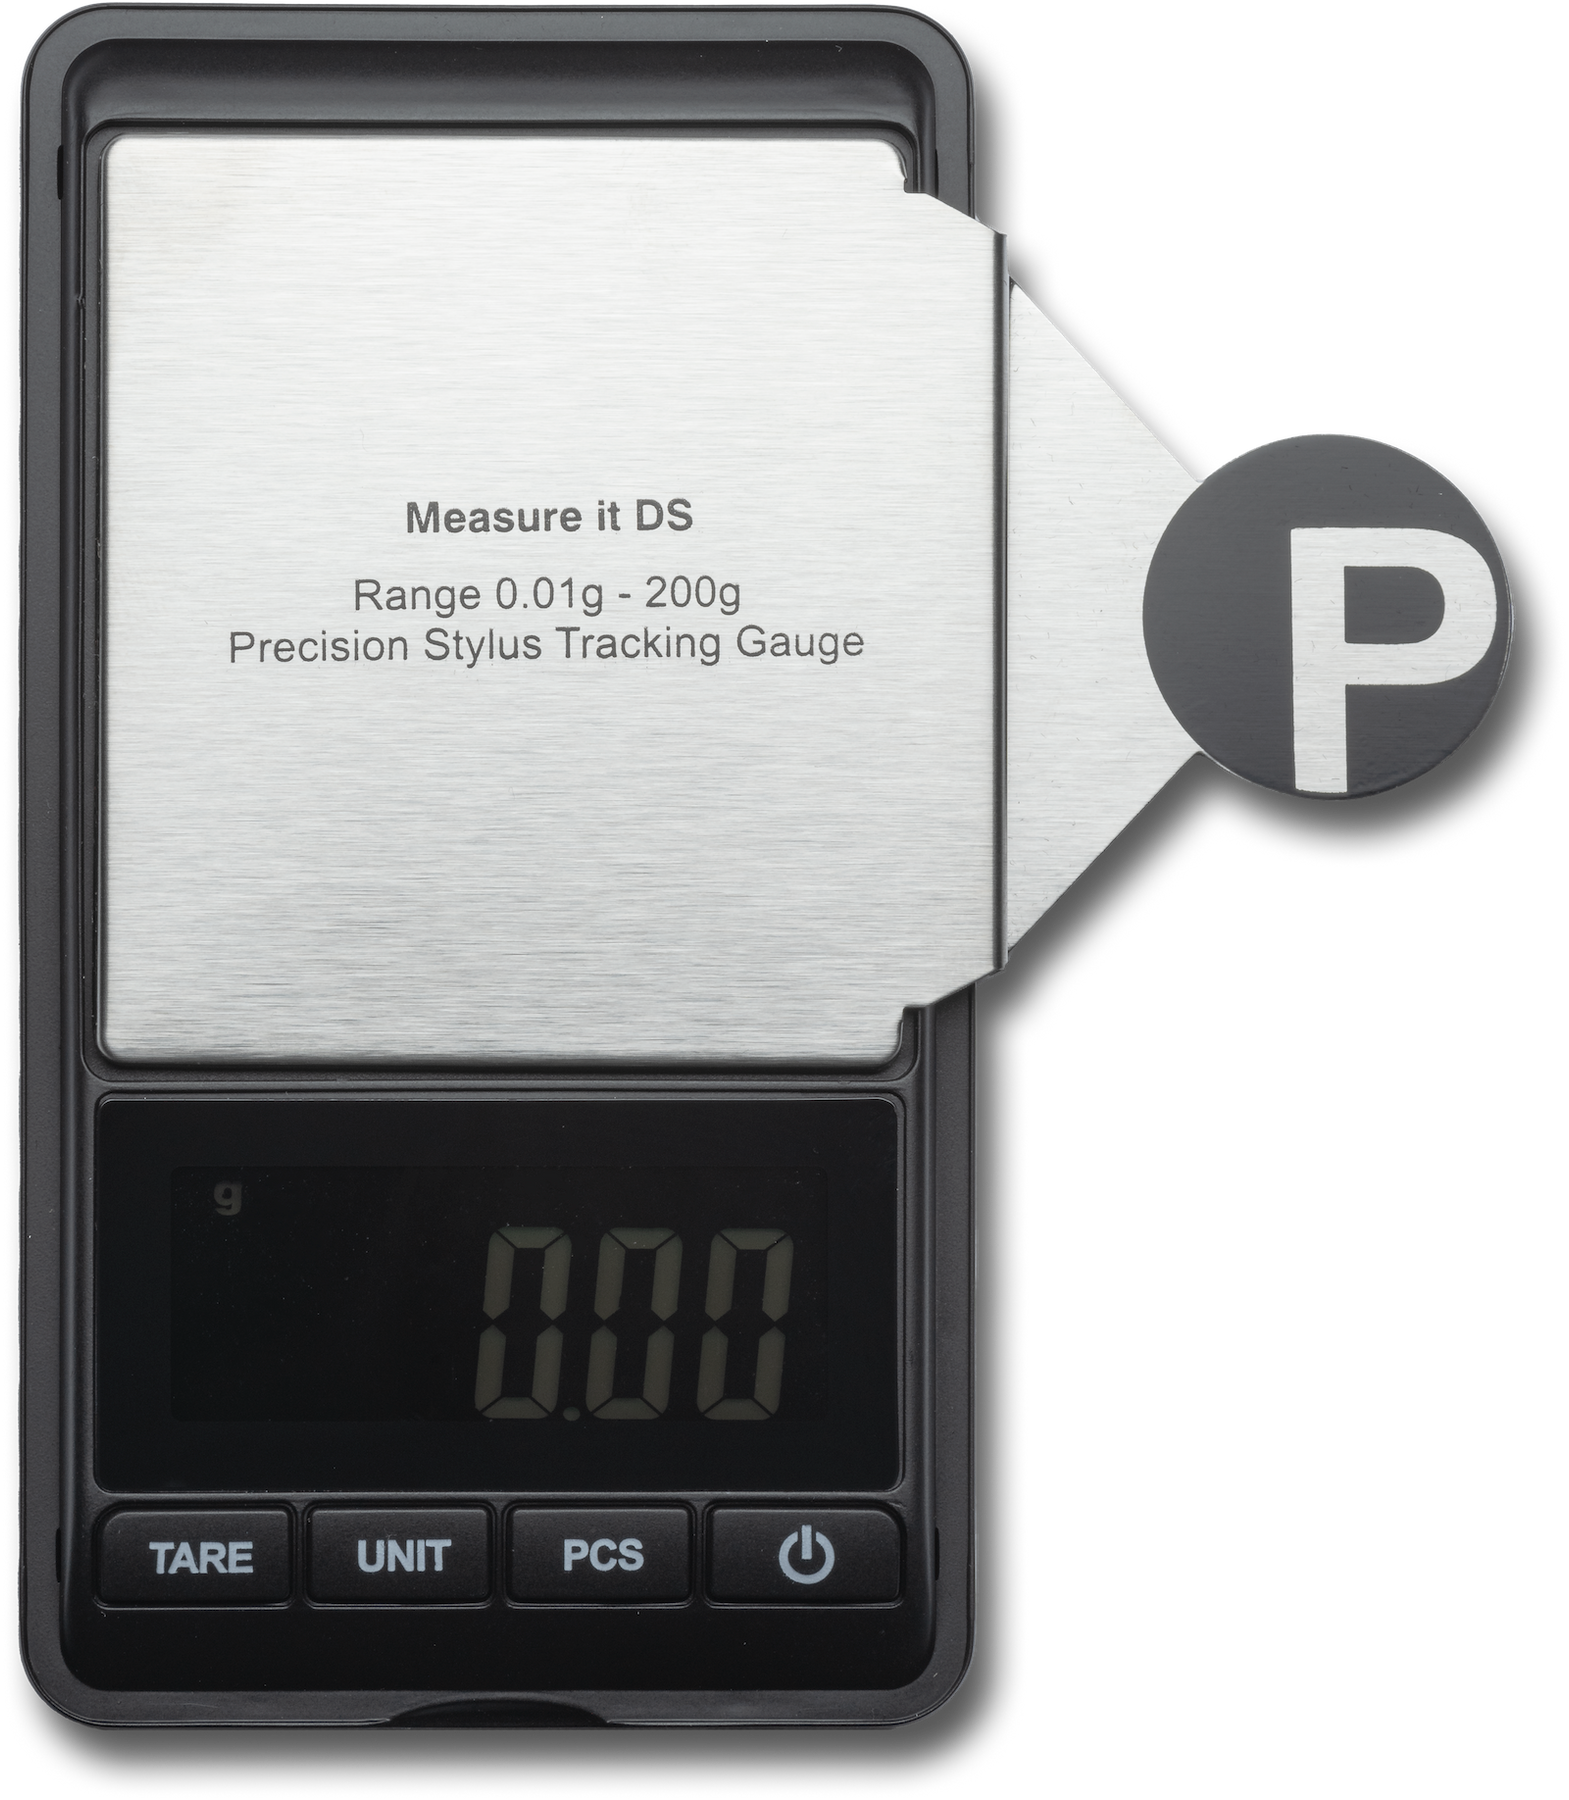 Весы Pro-Ject Measure IT DS